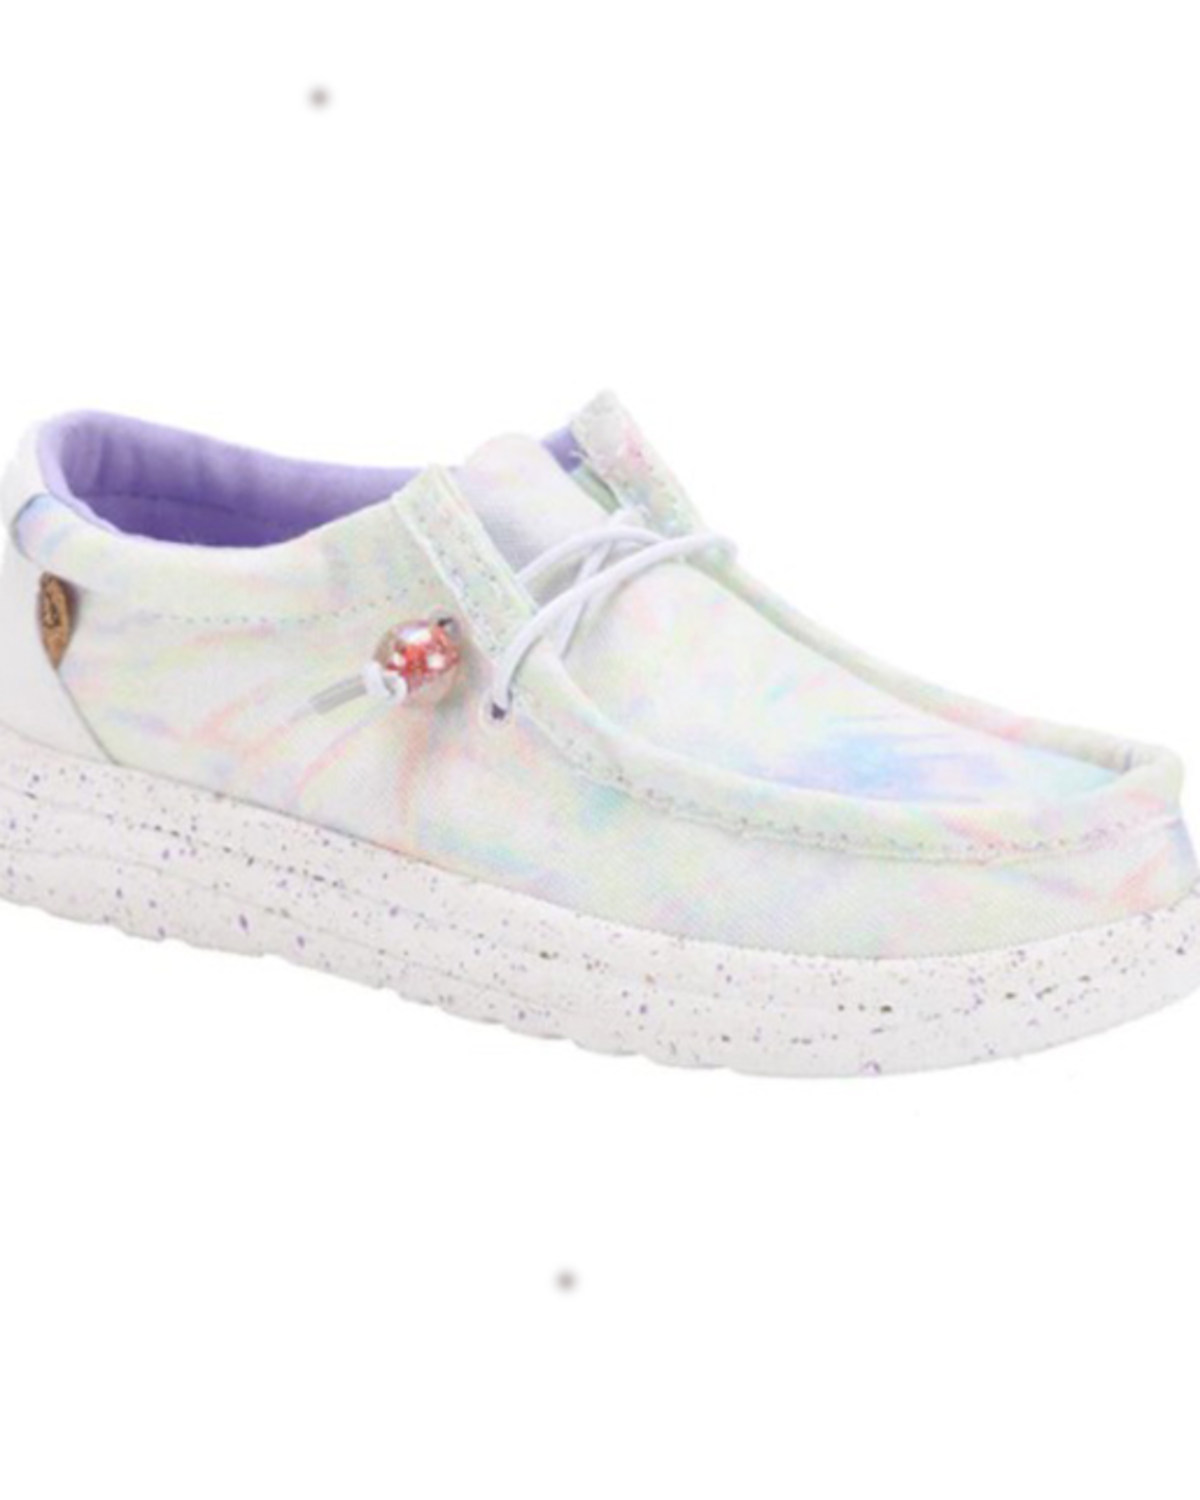 Lamo Footwear Girls' Tie Dye Paulie Casual Shoes - Moc Toe